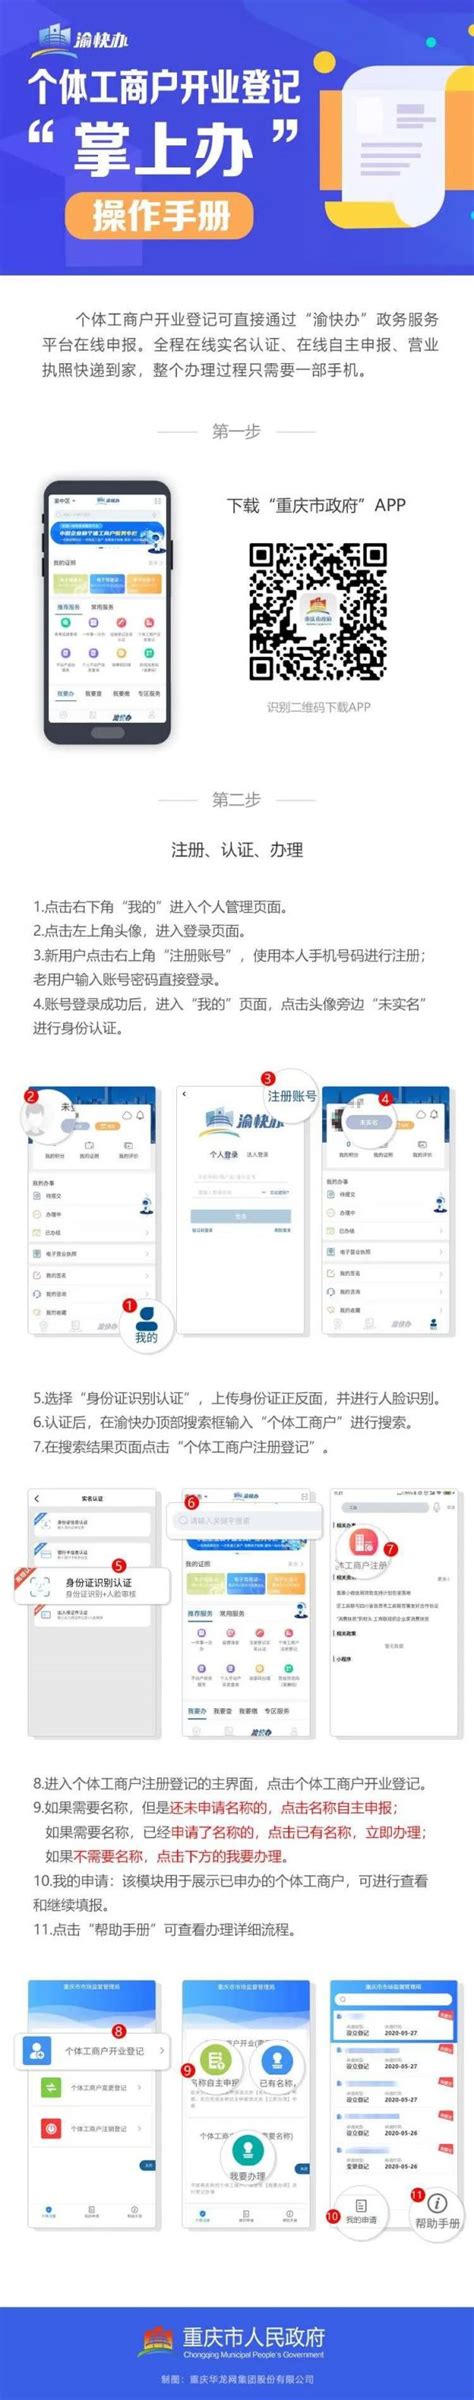 重庆网上申办公司流程